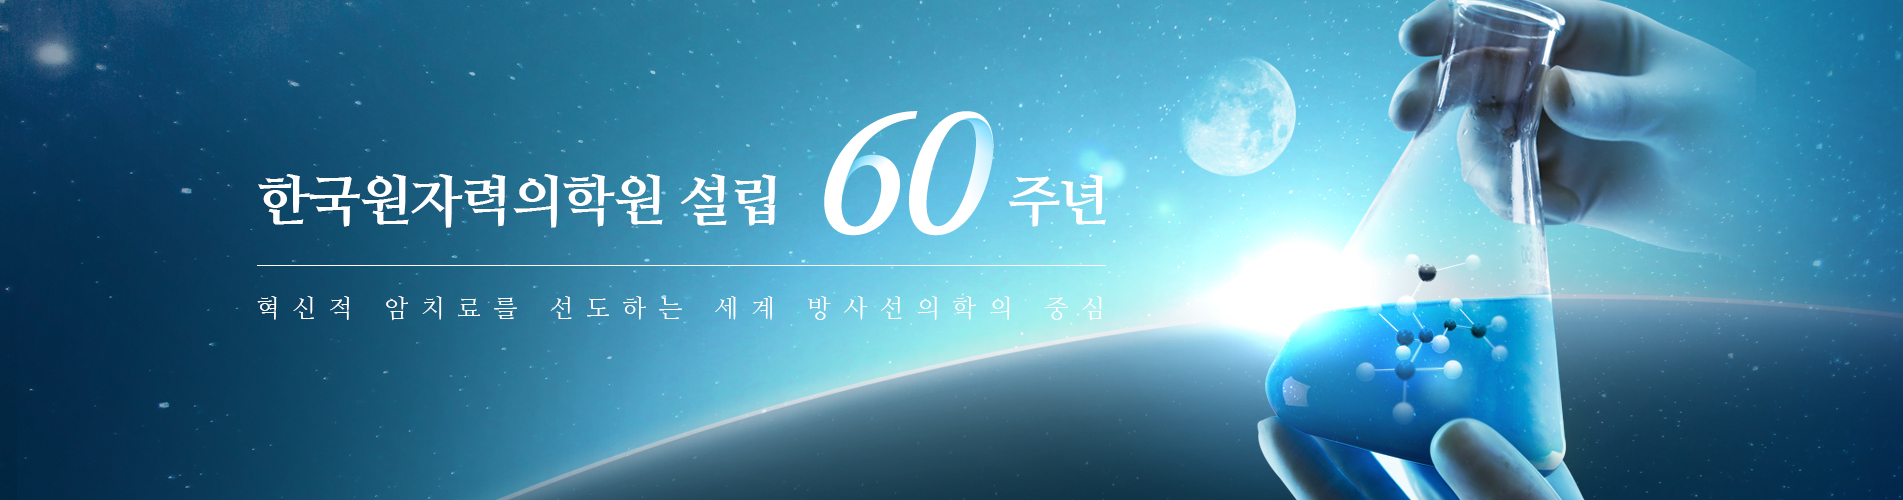 한국원자력의학원 설립 60주년 : 혁신적 암치료를 선도하는 세계 방사선의학의 중심